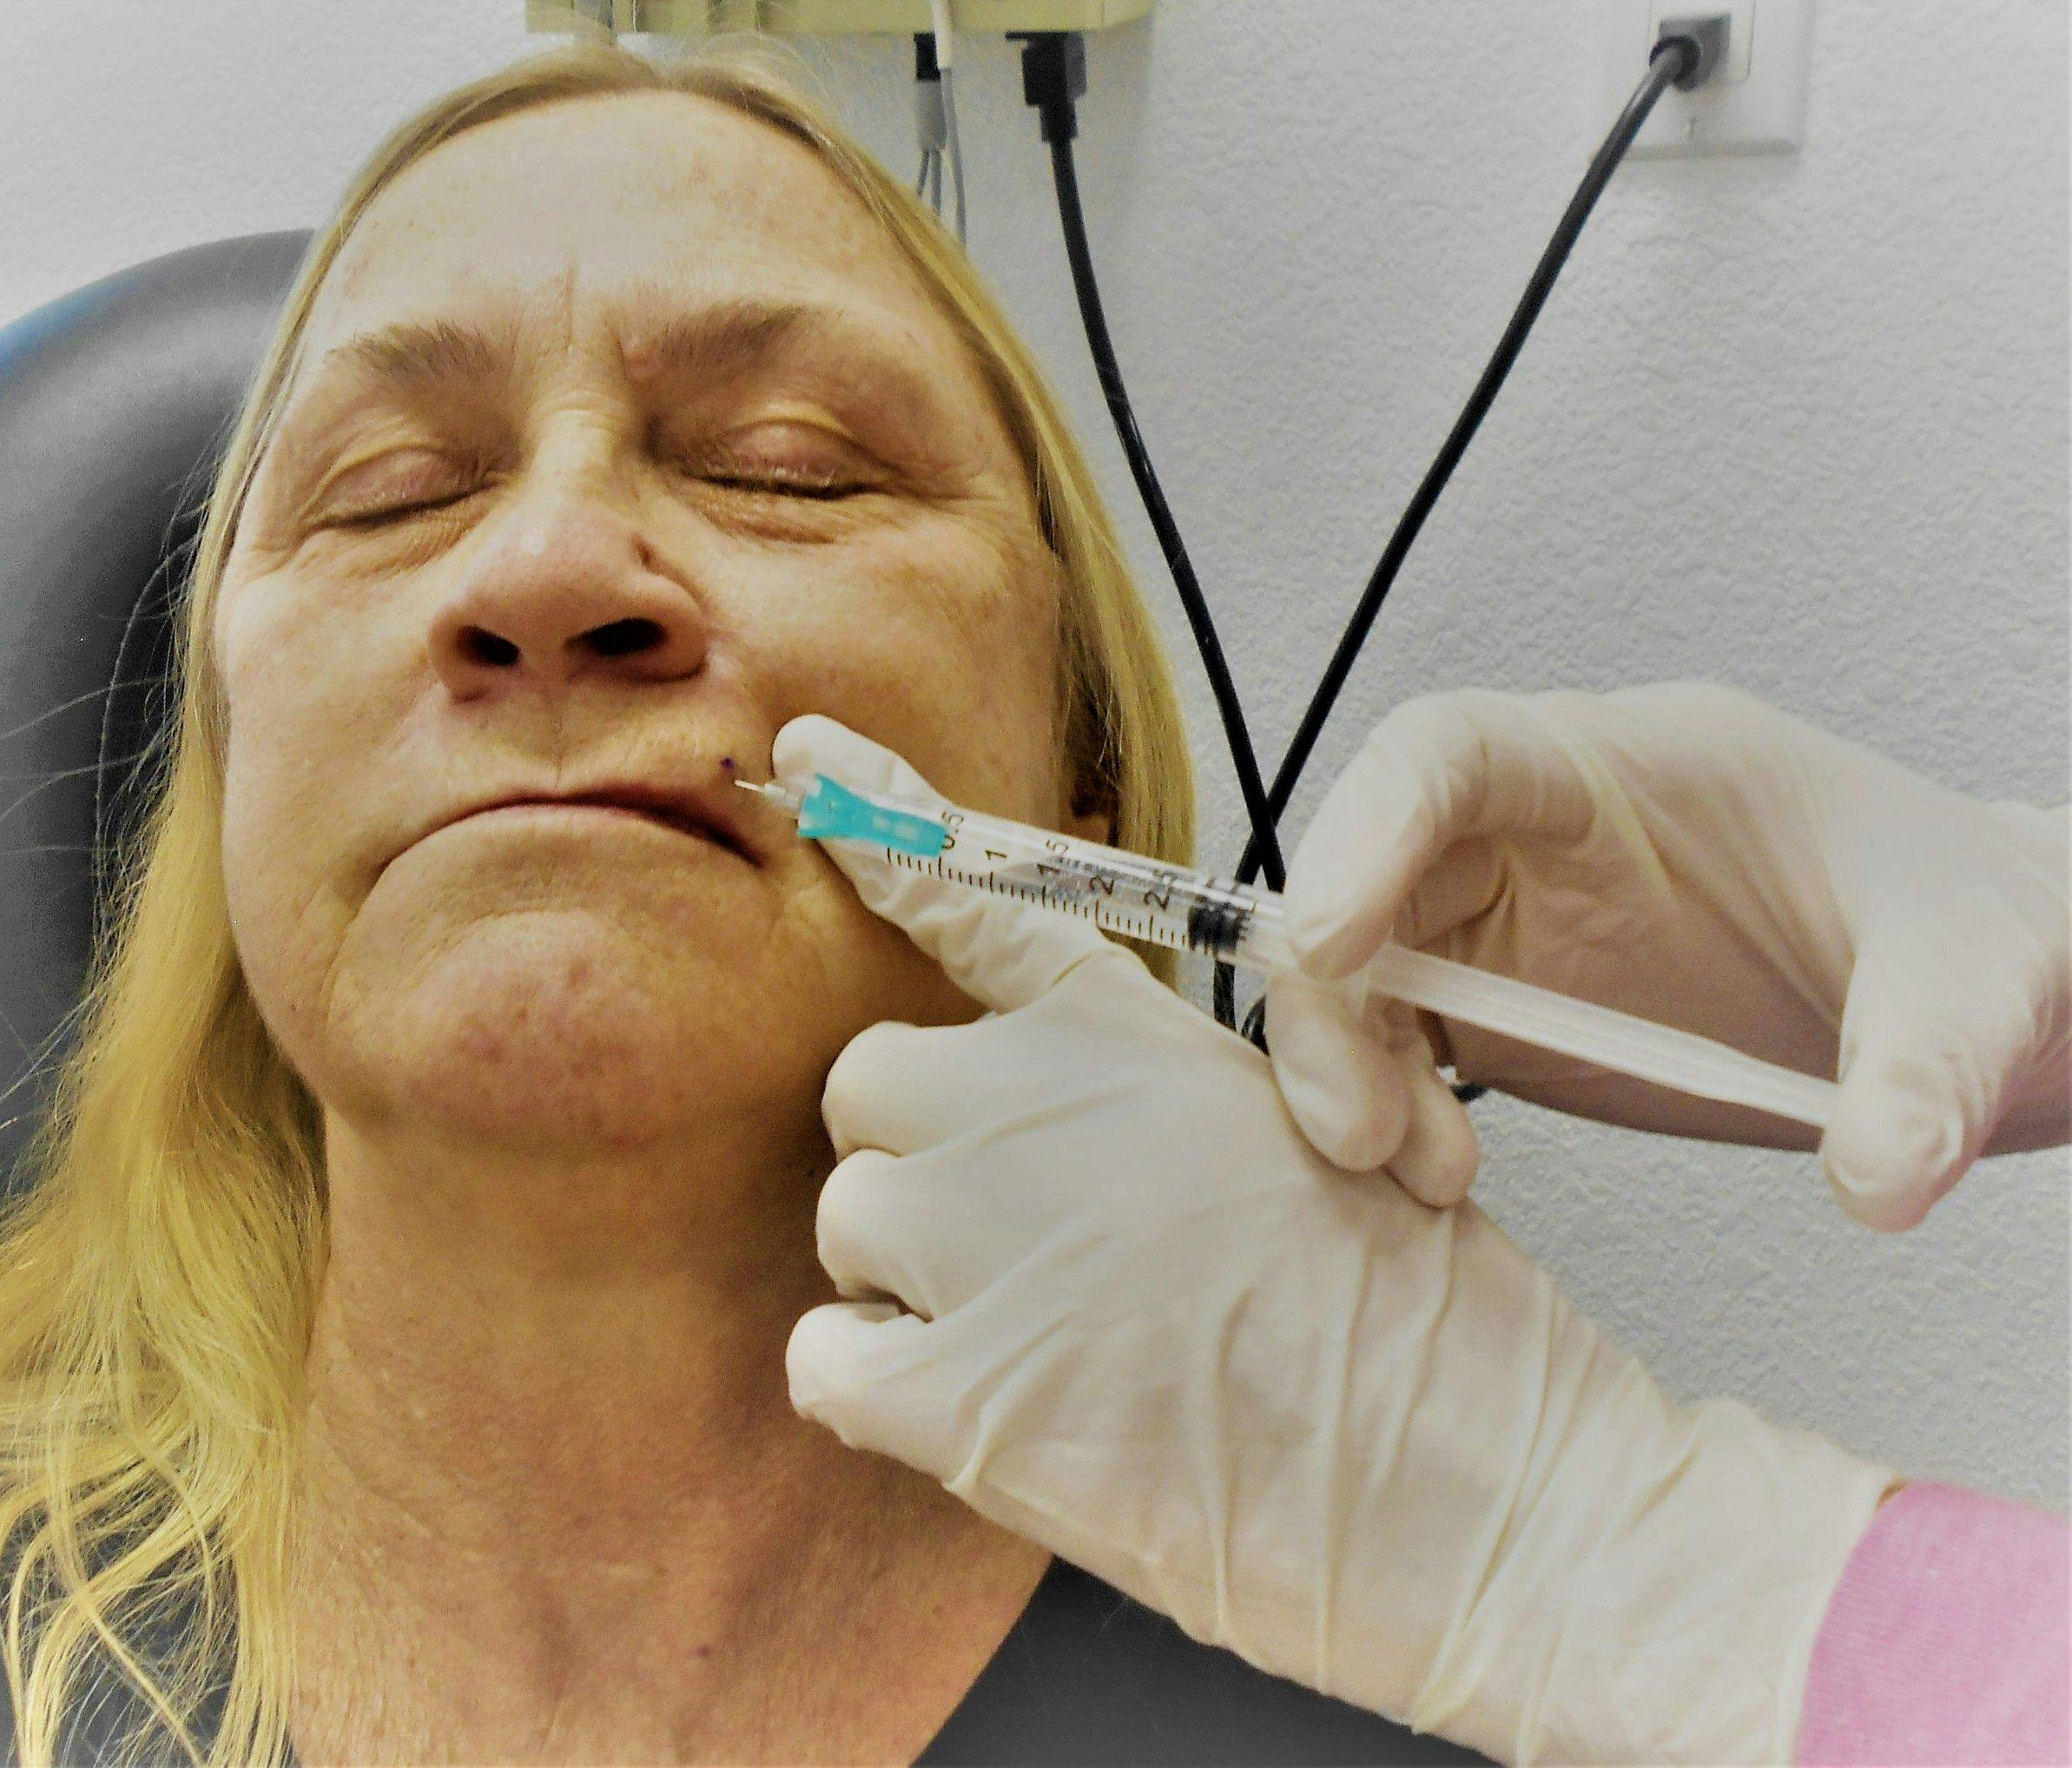 Lidocaine injection in face | Image credit: AZ-BLT/Envato Elements